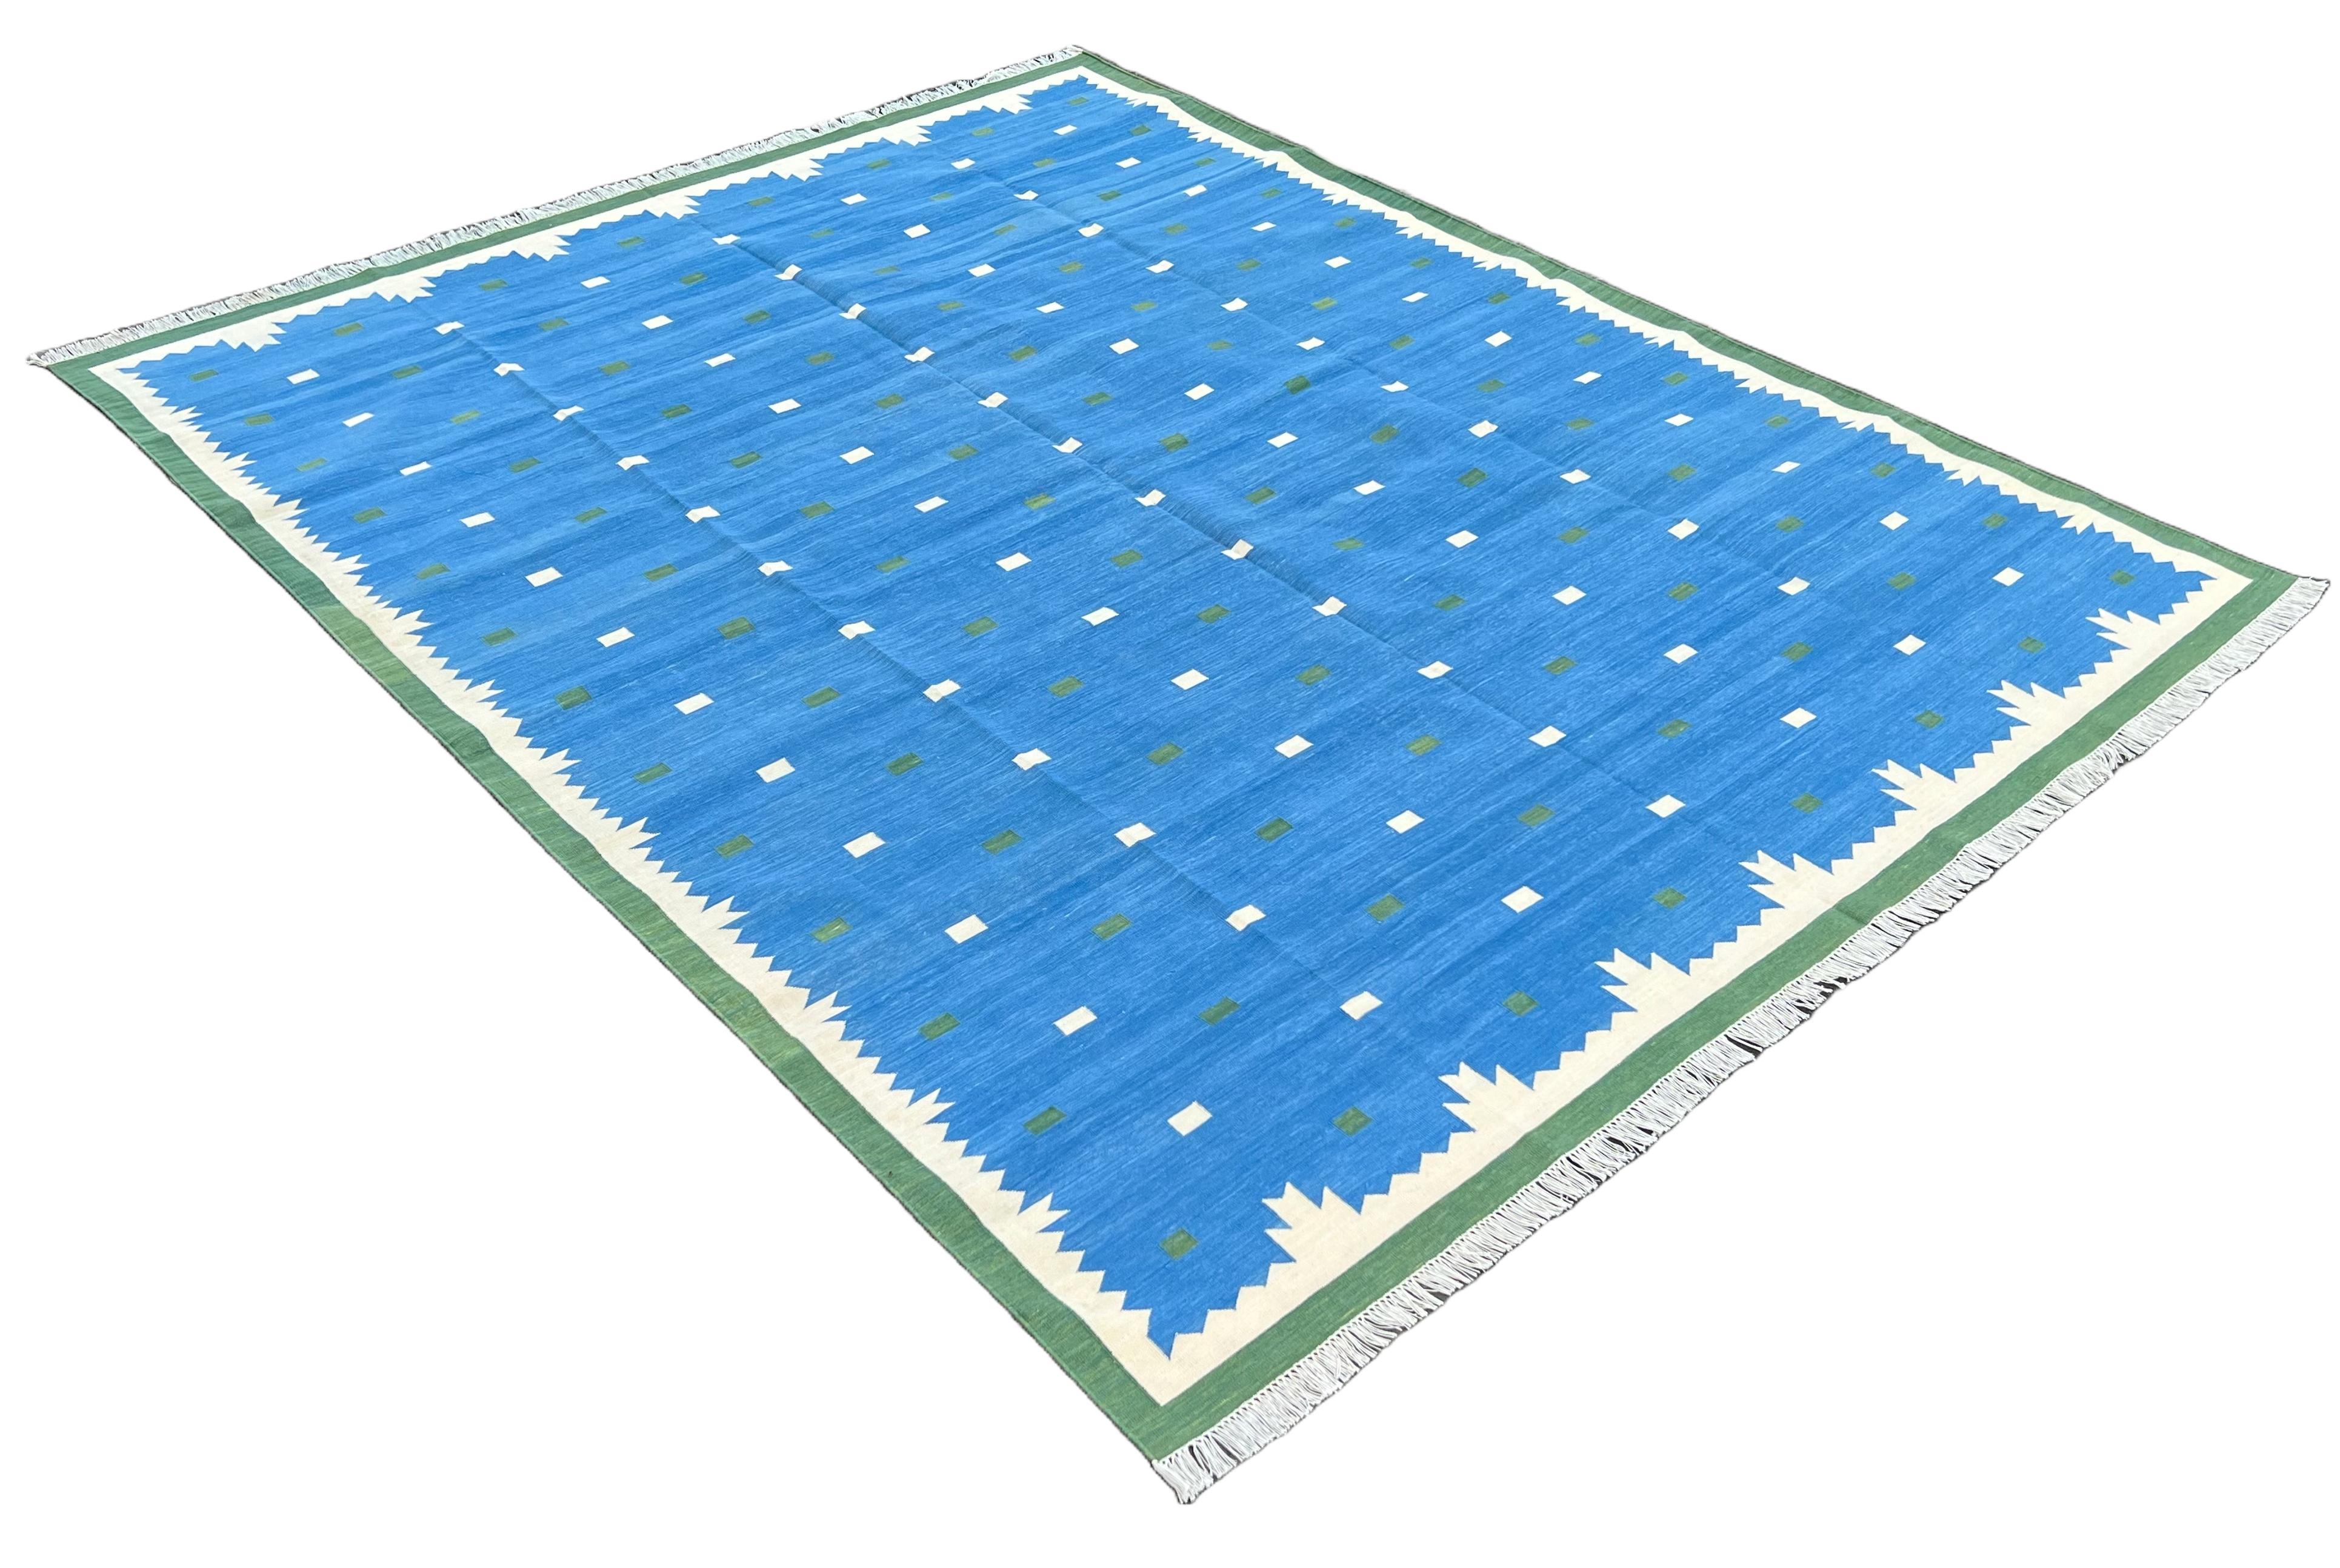 Tapis indien en coton teint végétal réversible bleu, vert et crème à motifs géométriques - 8'x10'
Ces dhurries spéciales à tissage plat sont tissées à la main avec du fil 100 % coton 15 plis. En raison des techniques de fabrication spéciales